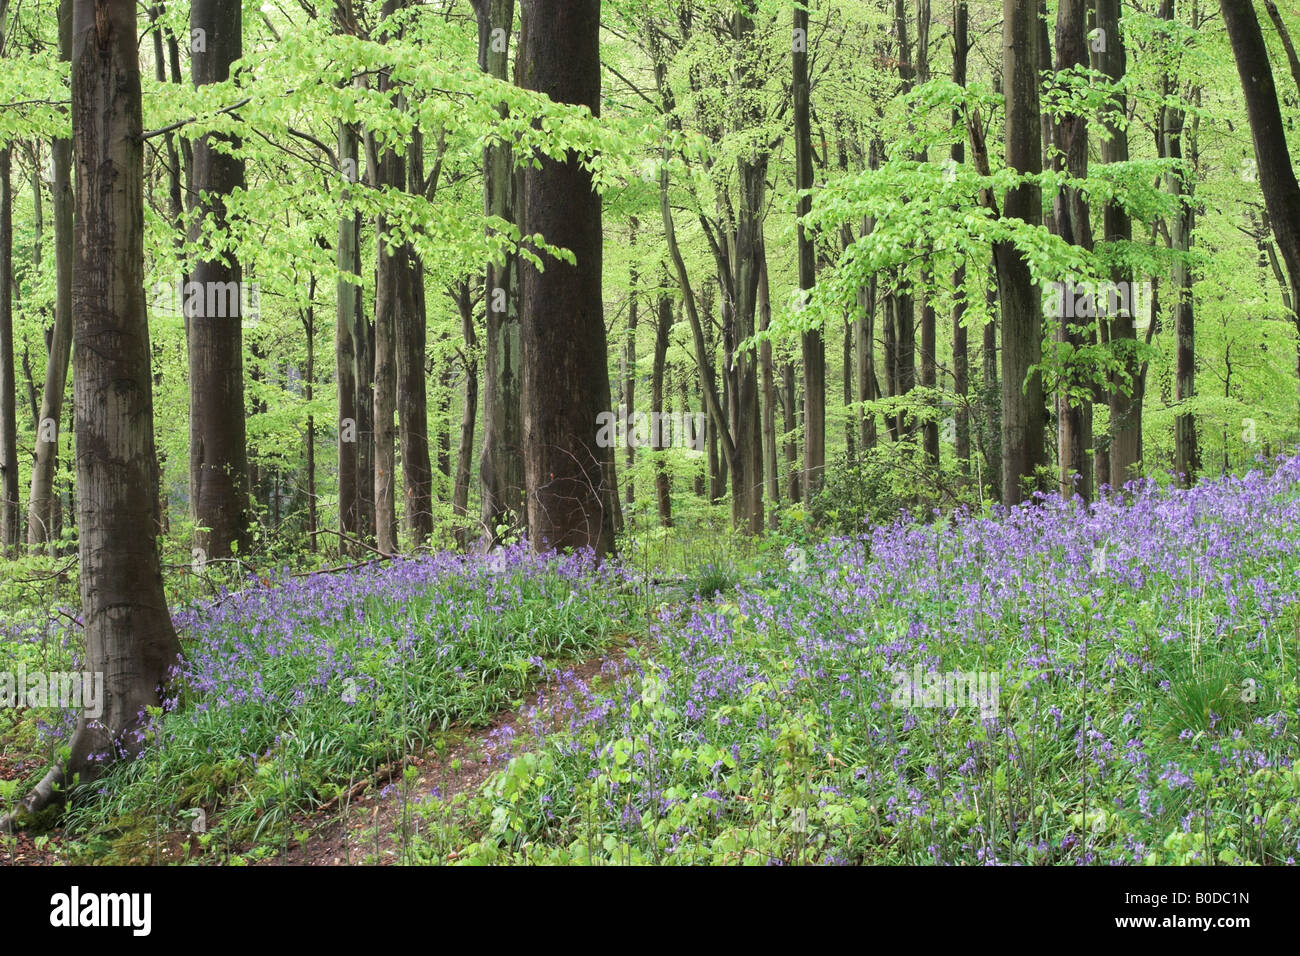 Un chemin parmi les cloches à fleurs - jacinthoides non scripta dans West Woods bluebell Wood, près de Marlborough, Wiltshire, Angleterre, Royaume-Uni Banque D'Images